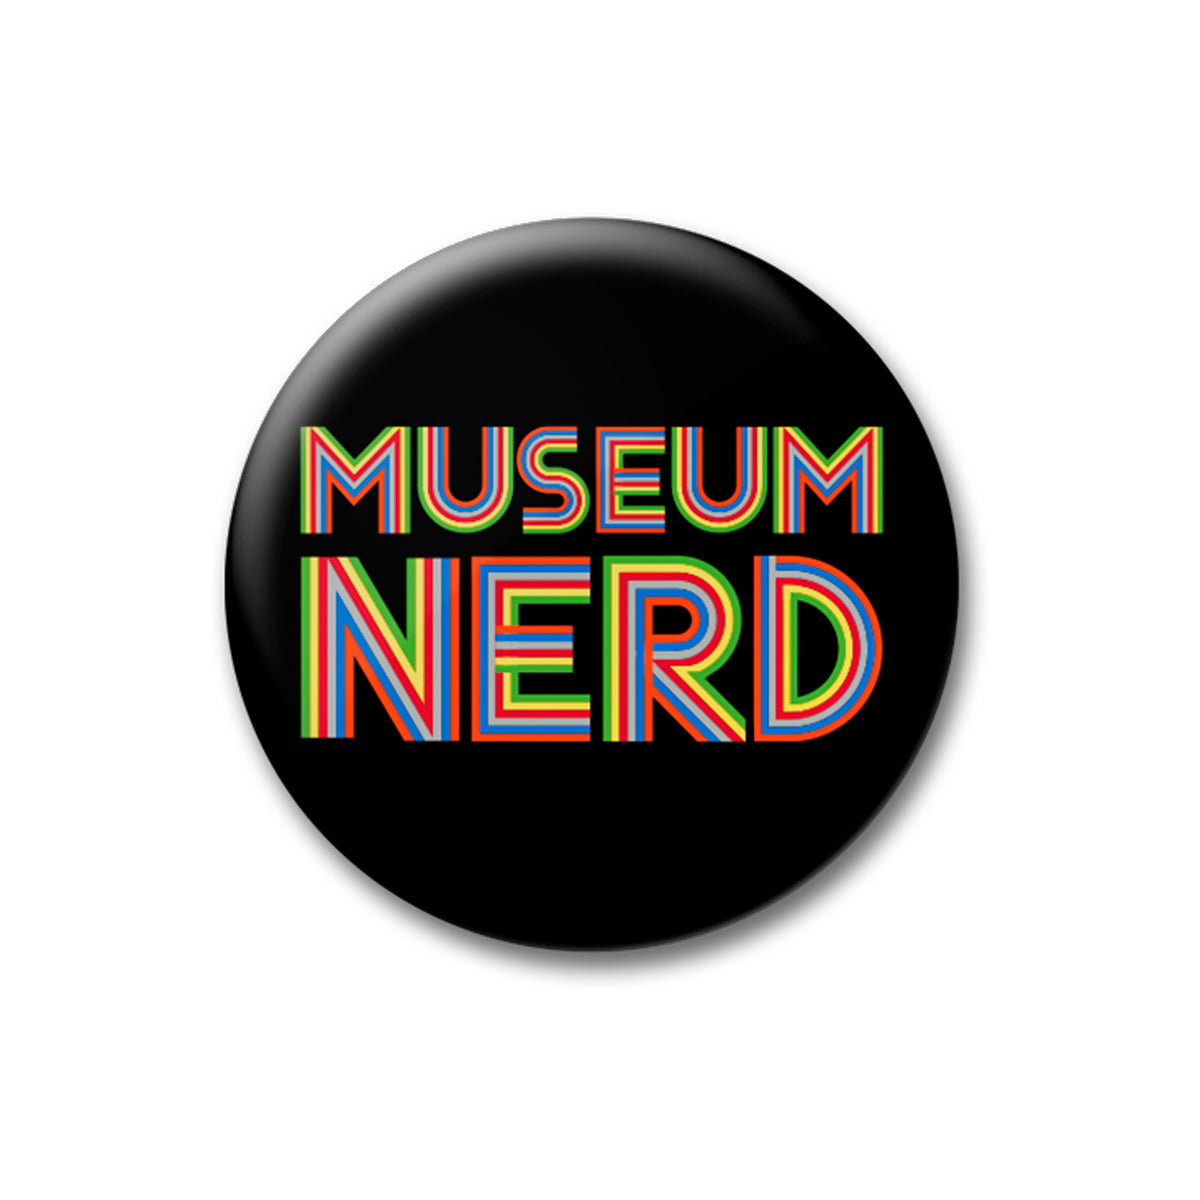 Museum Nerd